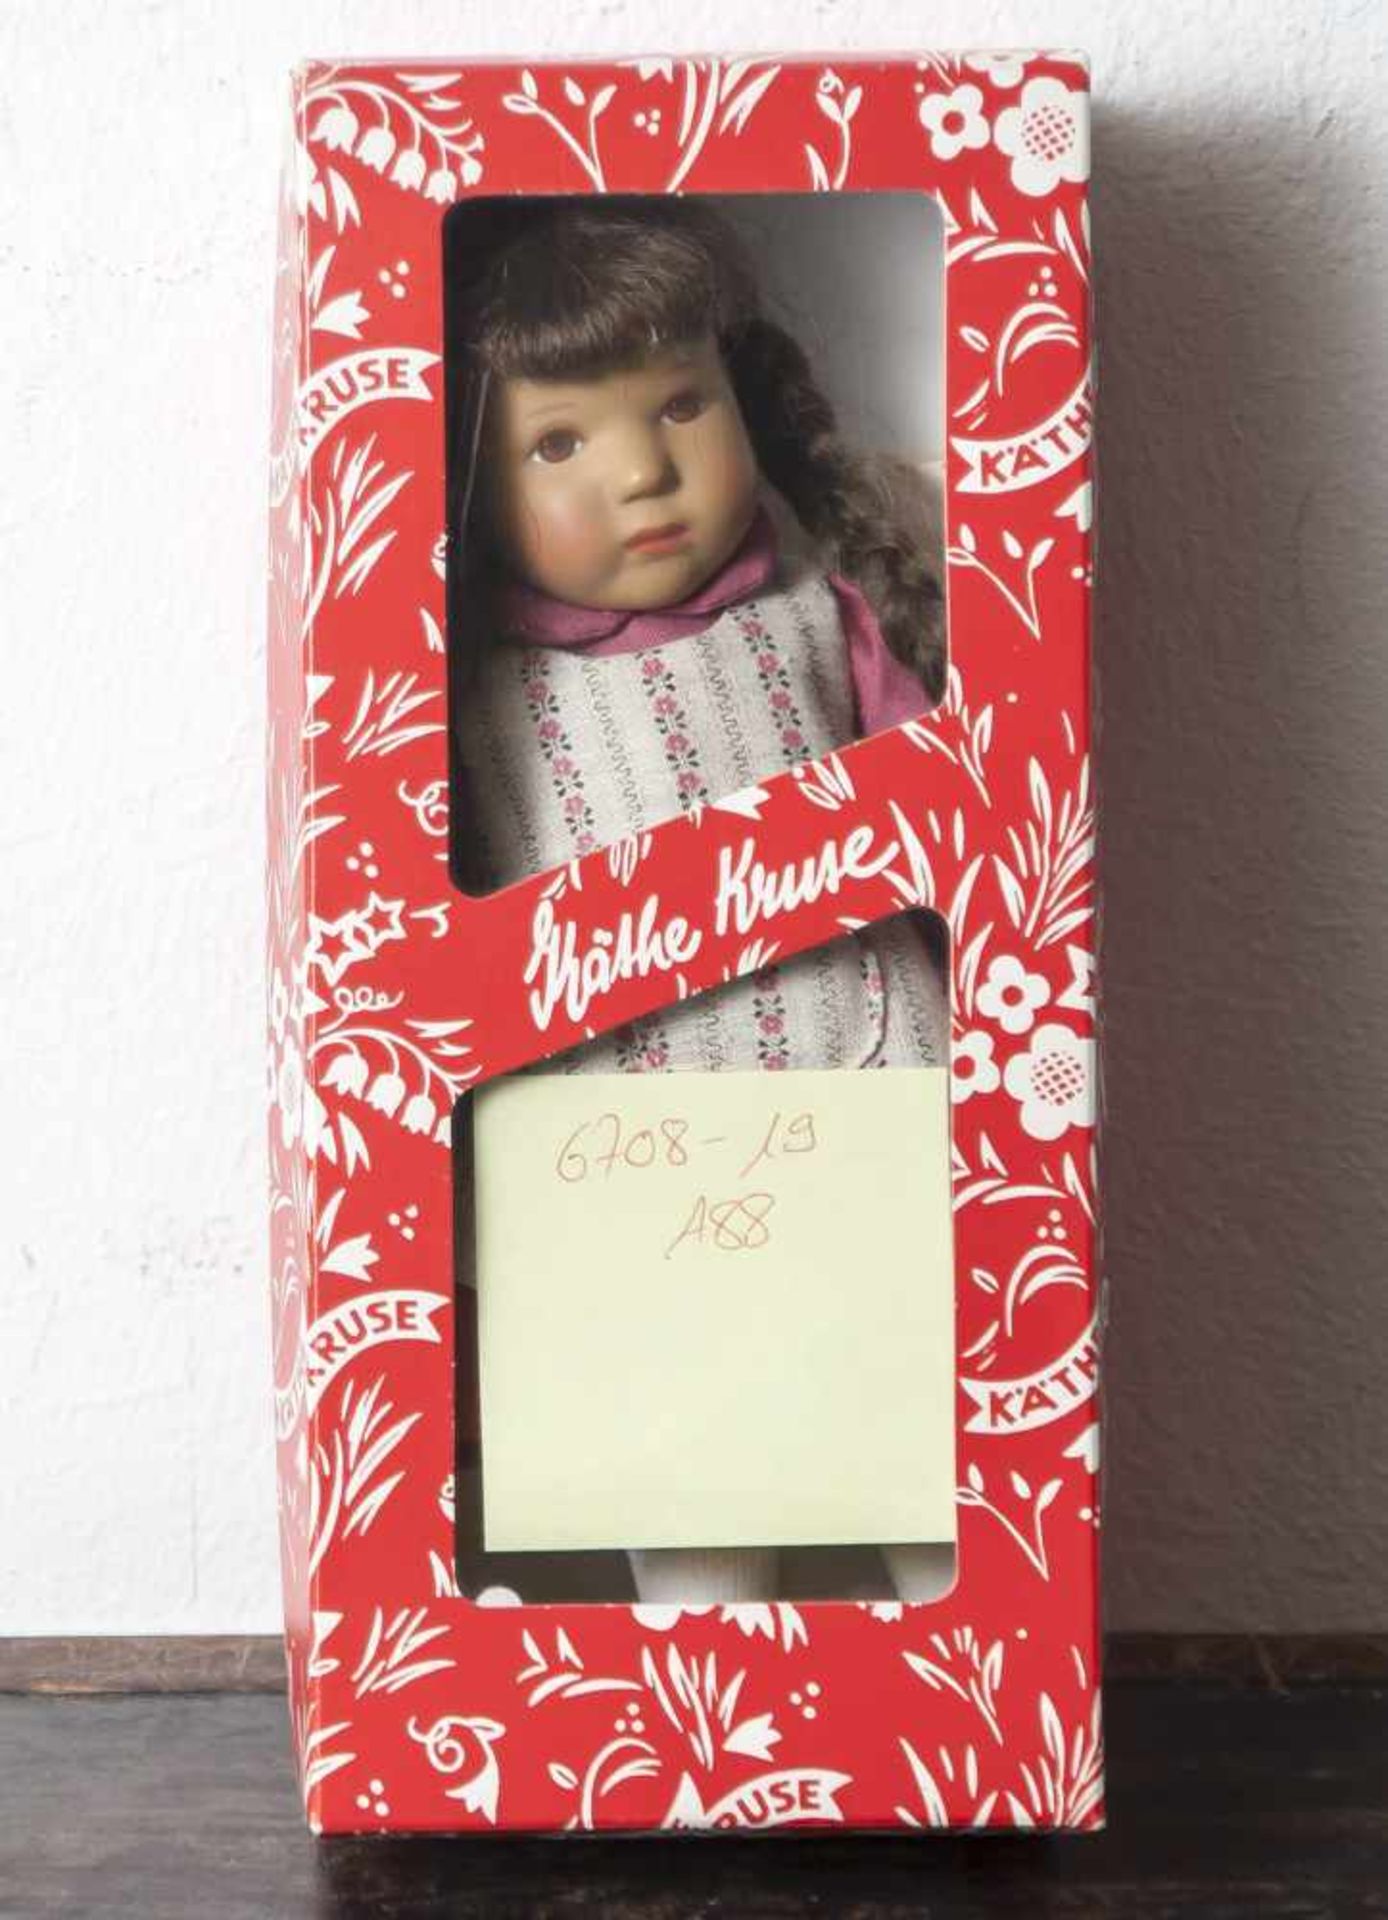 Käthe Kruse-Puppe, "Gudrun", Mädchen mit braunen Zöpfen und Augen, bekleidet mit pinkem Kleid und